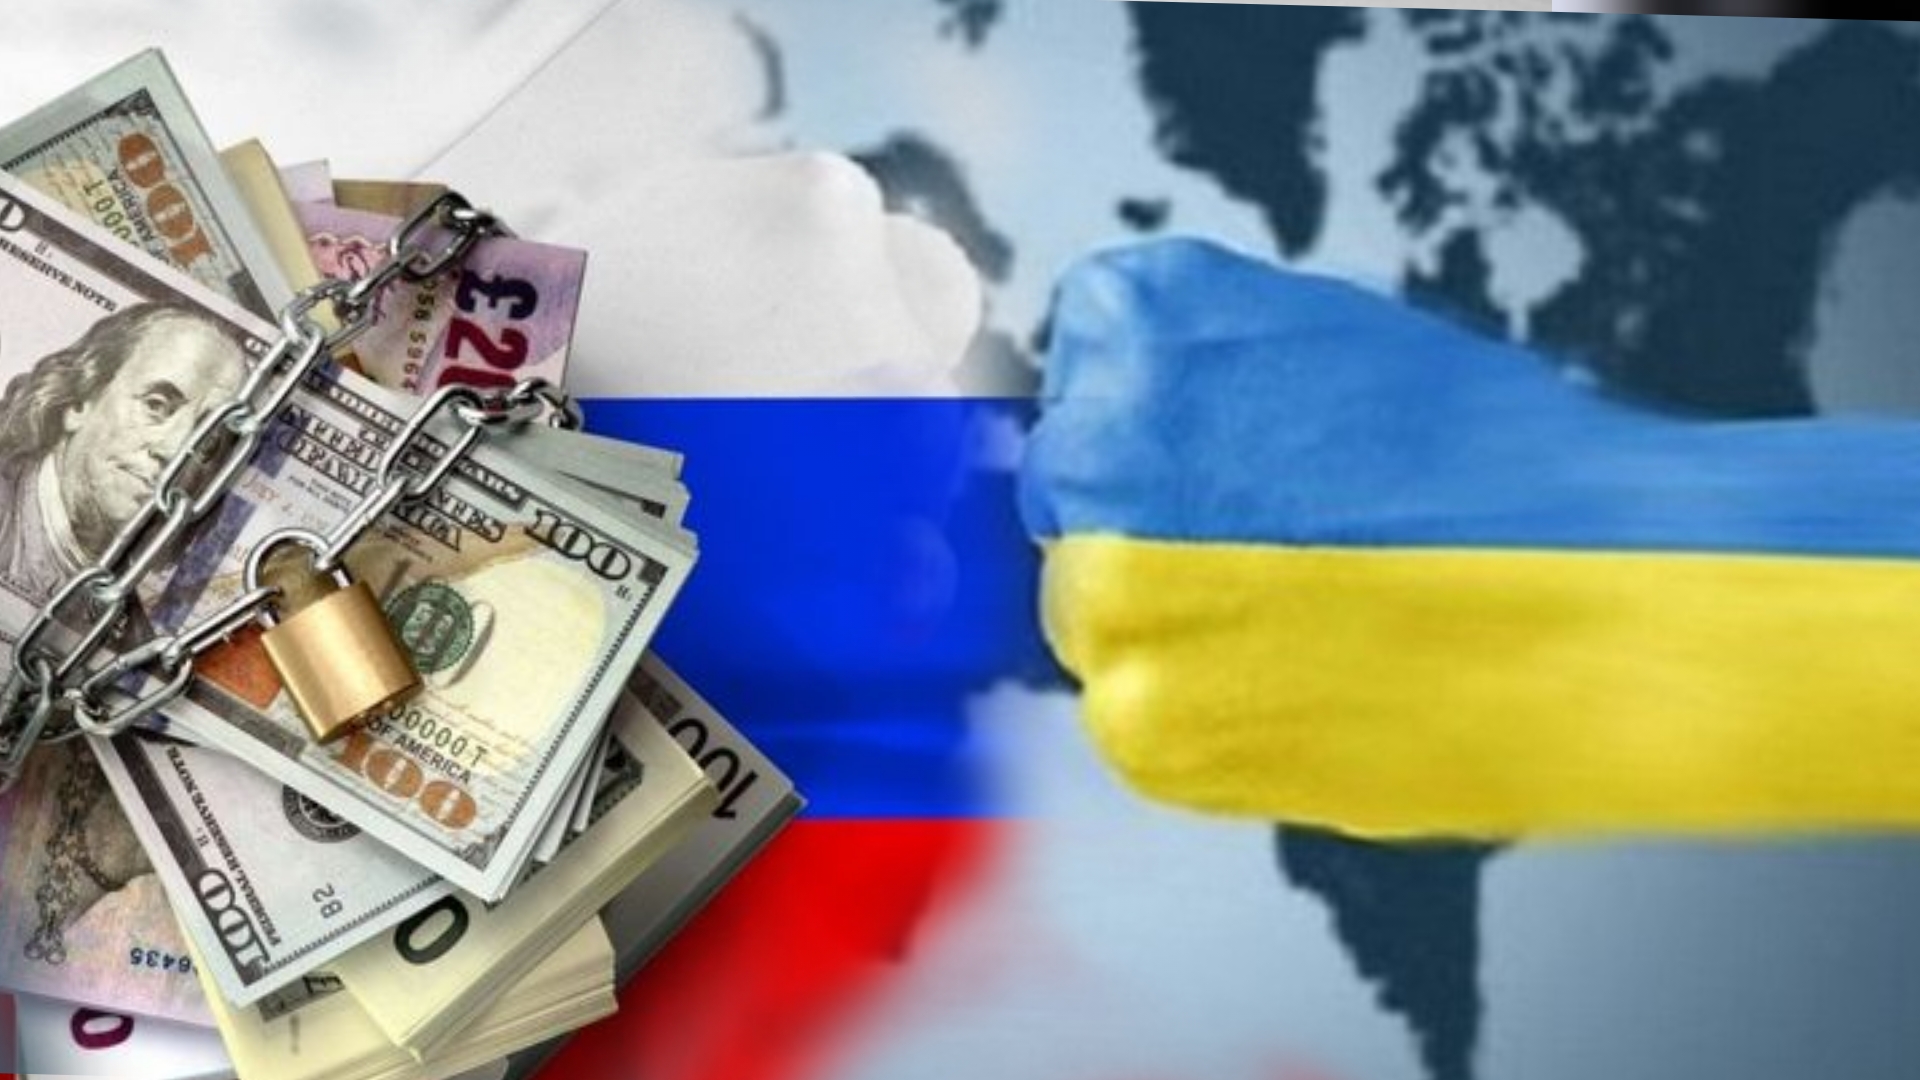 Ukraynanın qələbəsi üçün yeni həmlə – “Rus kartı” masaya atılır